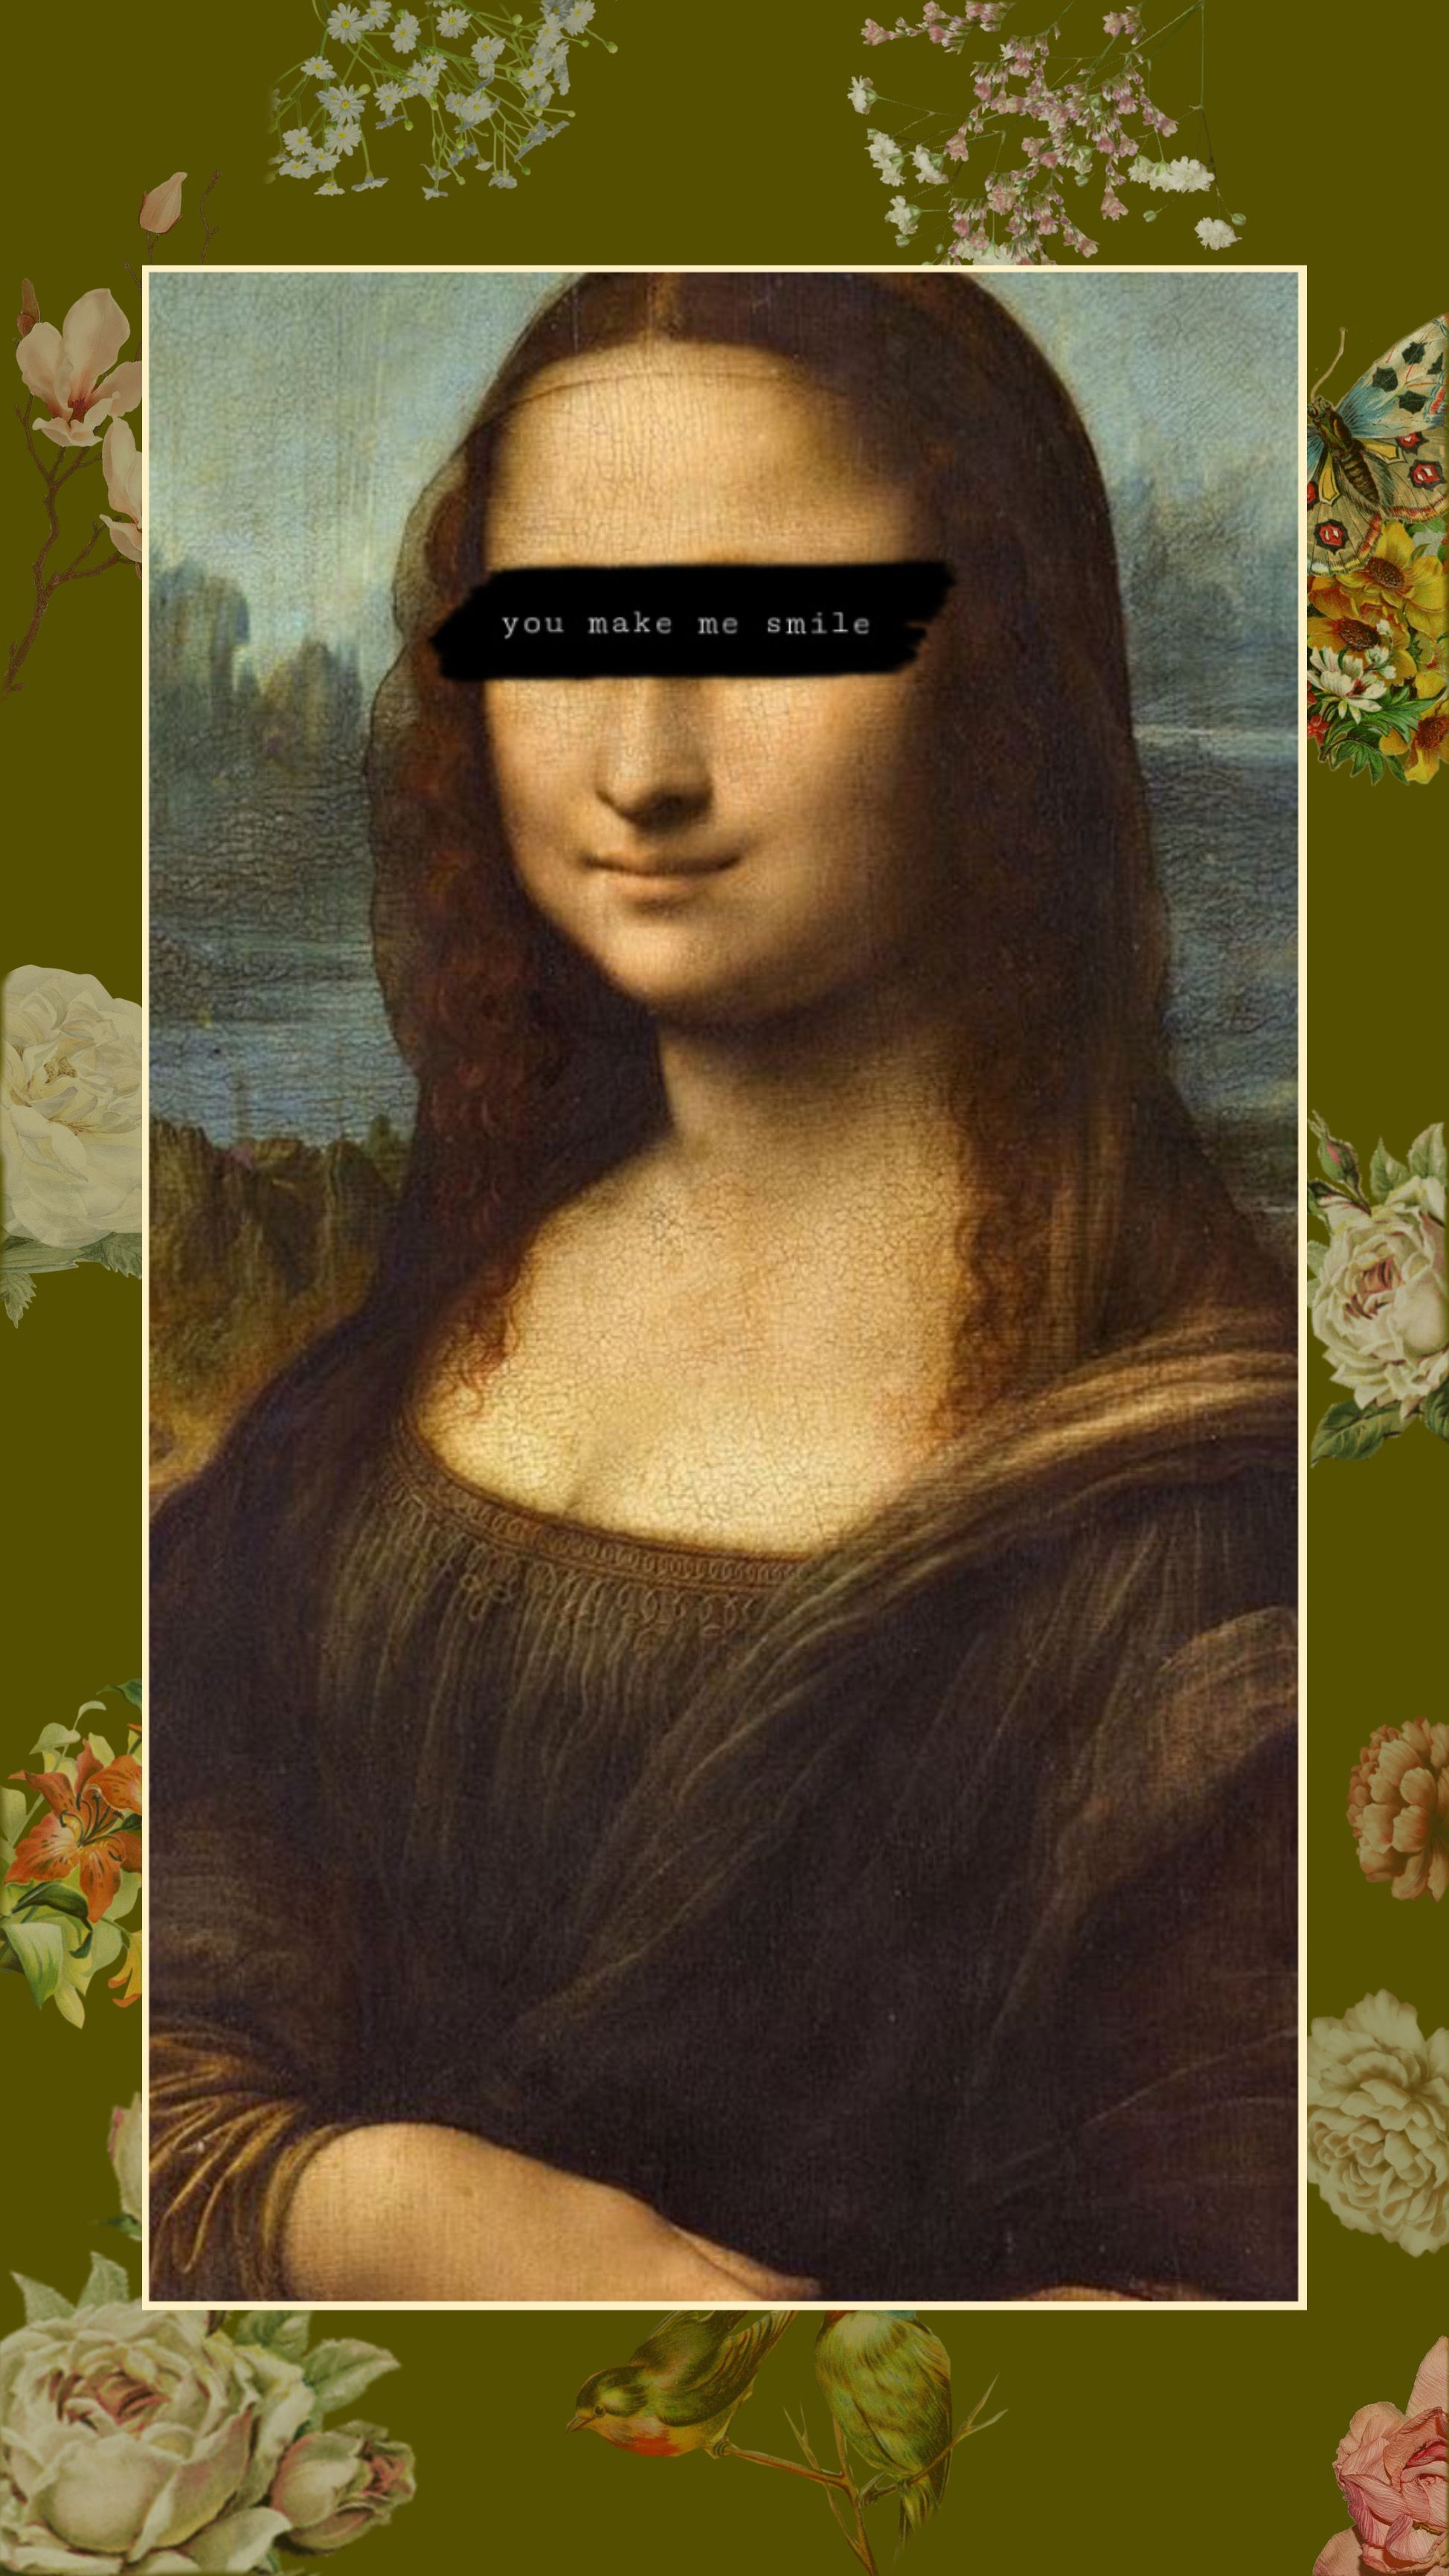 mona lisa wallpaper;). Mona lisa, Mona lisa wallpaper aesthetic, Mona lisa smile